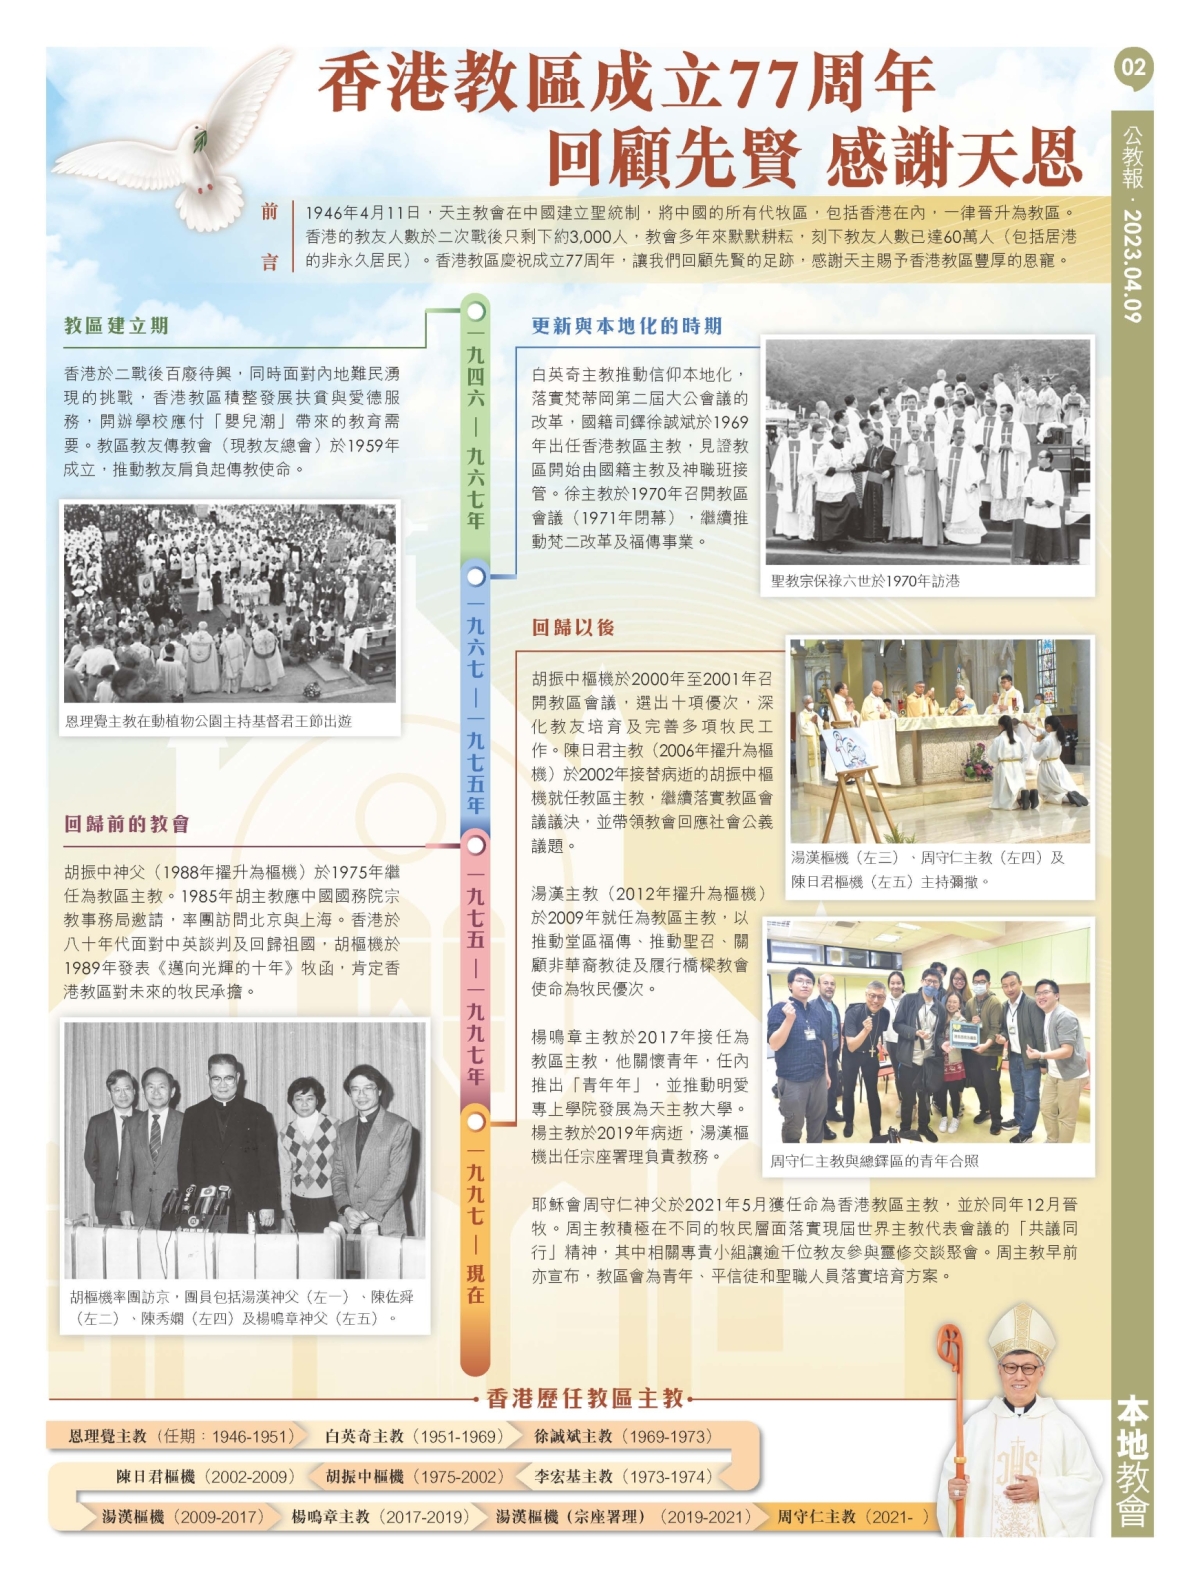 kkp02_20230409L_ 香港教區成立77周年 amendmentOn20230411